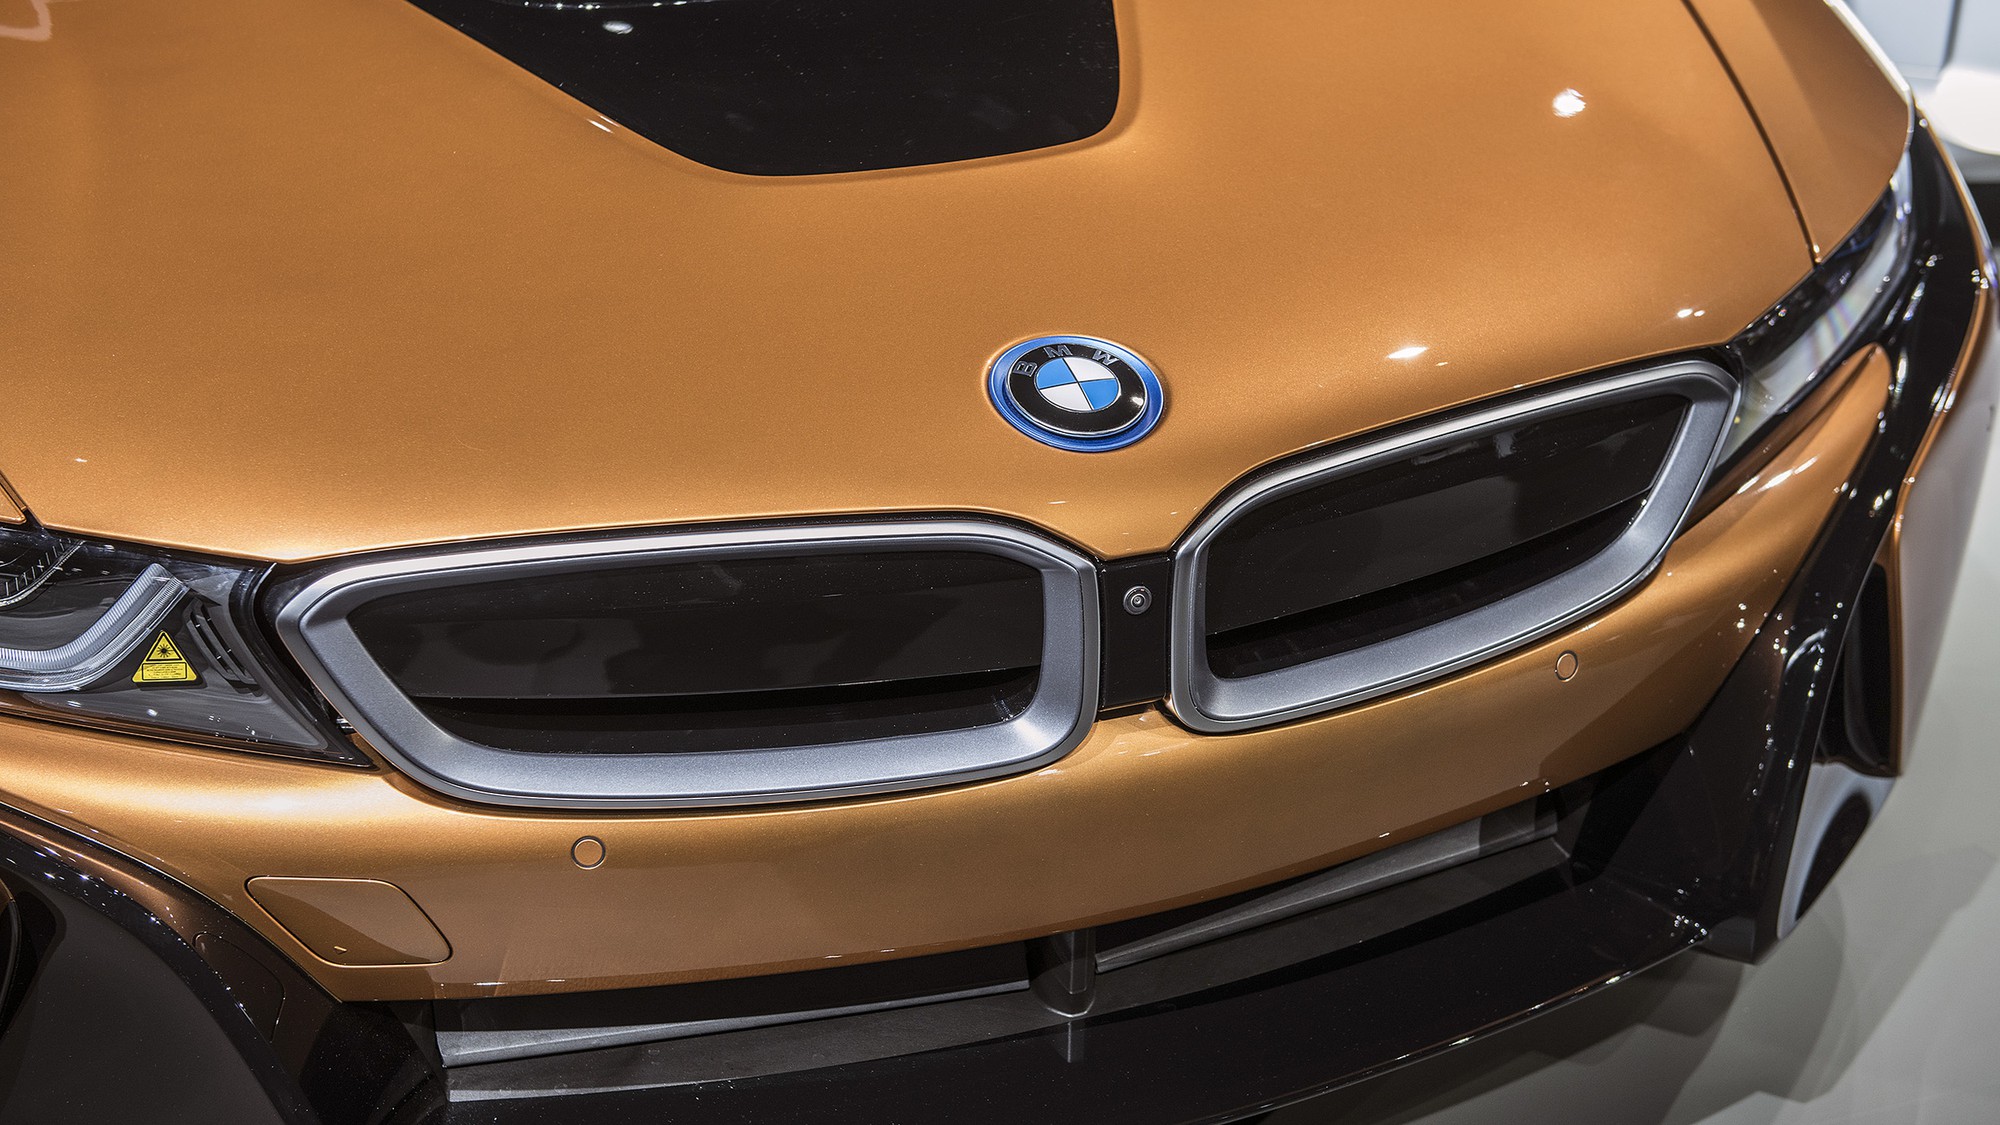 Hình ảnh BMW i8 sắc nét và đẹp mắt 2